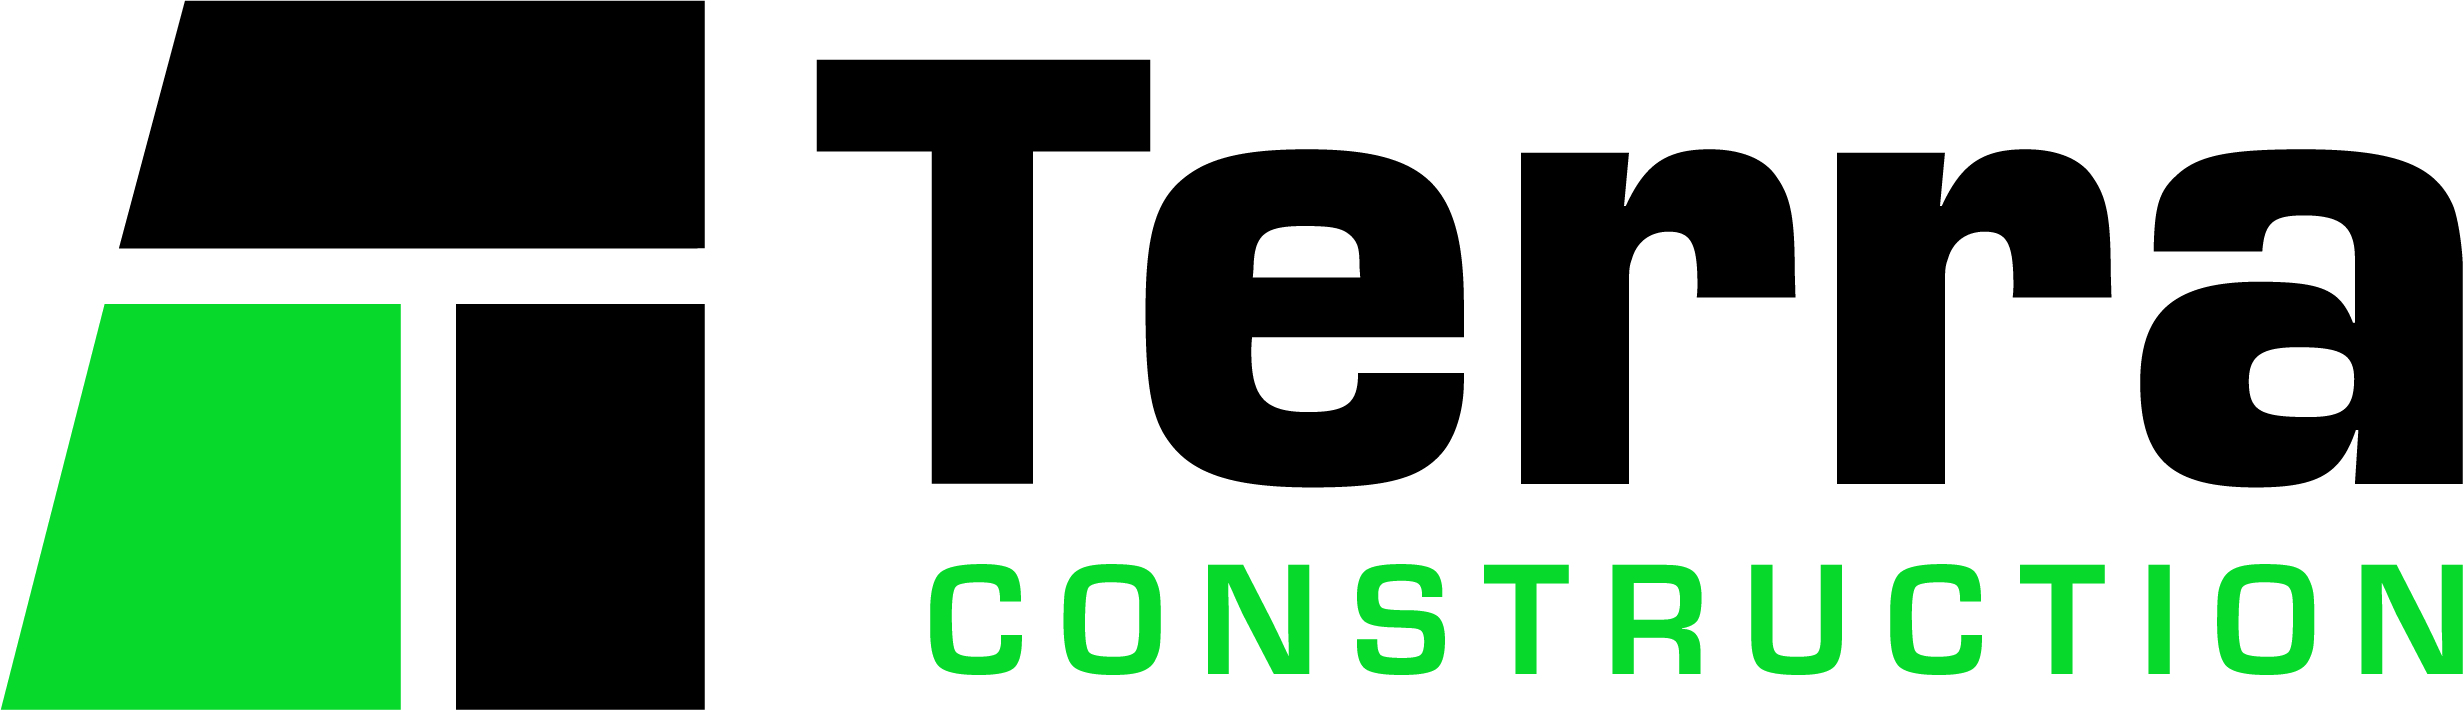 Terra General Contractors, LLC company logo